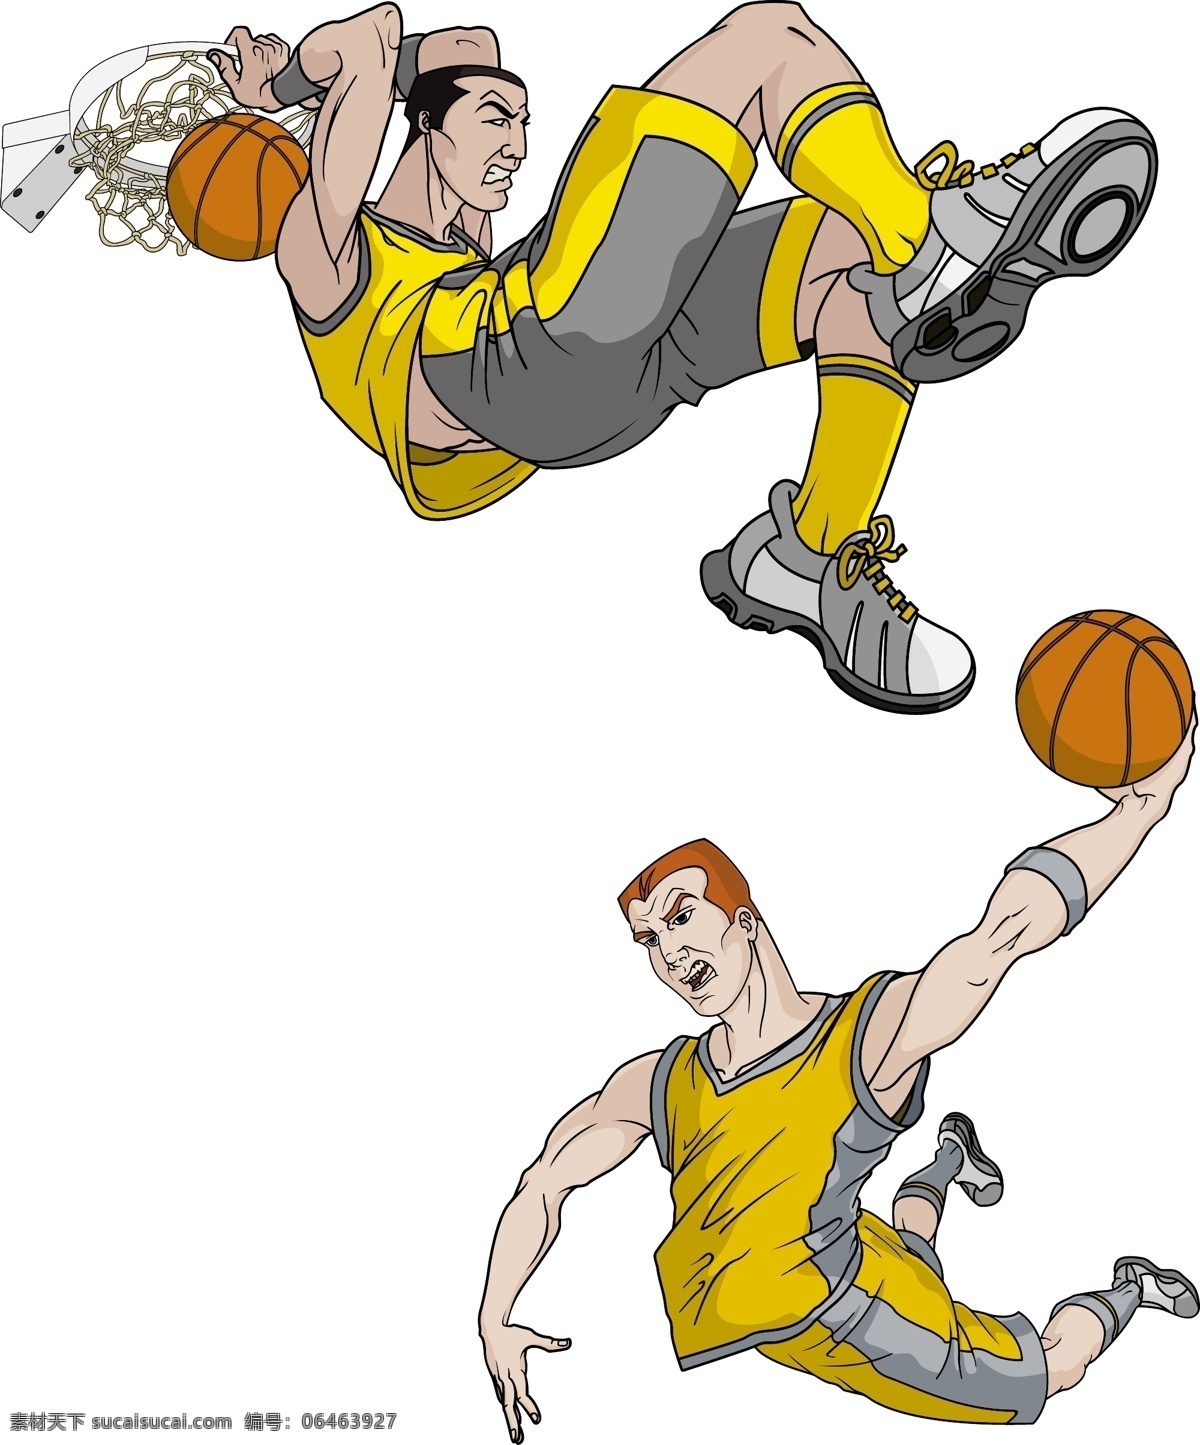 超酷 扣篮 动作 矢量 素材图片 篮球 人物 矢量素材 体育 体育运动 文化艺术 娱乐 运动 运动员 矢量图 日常生活